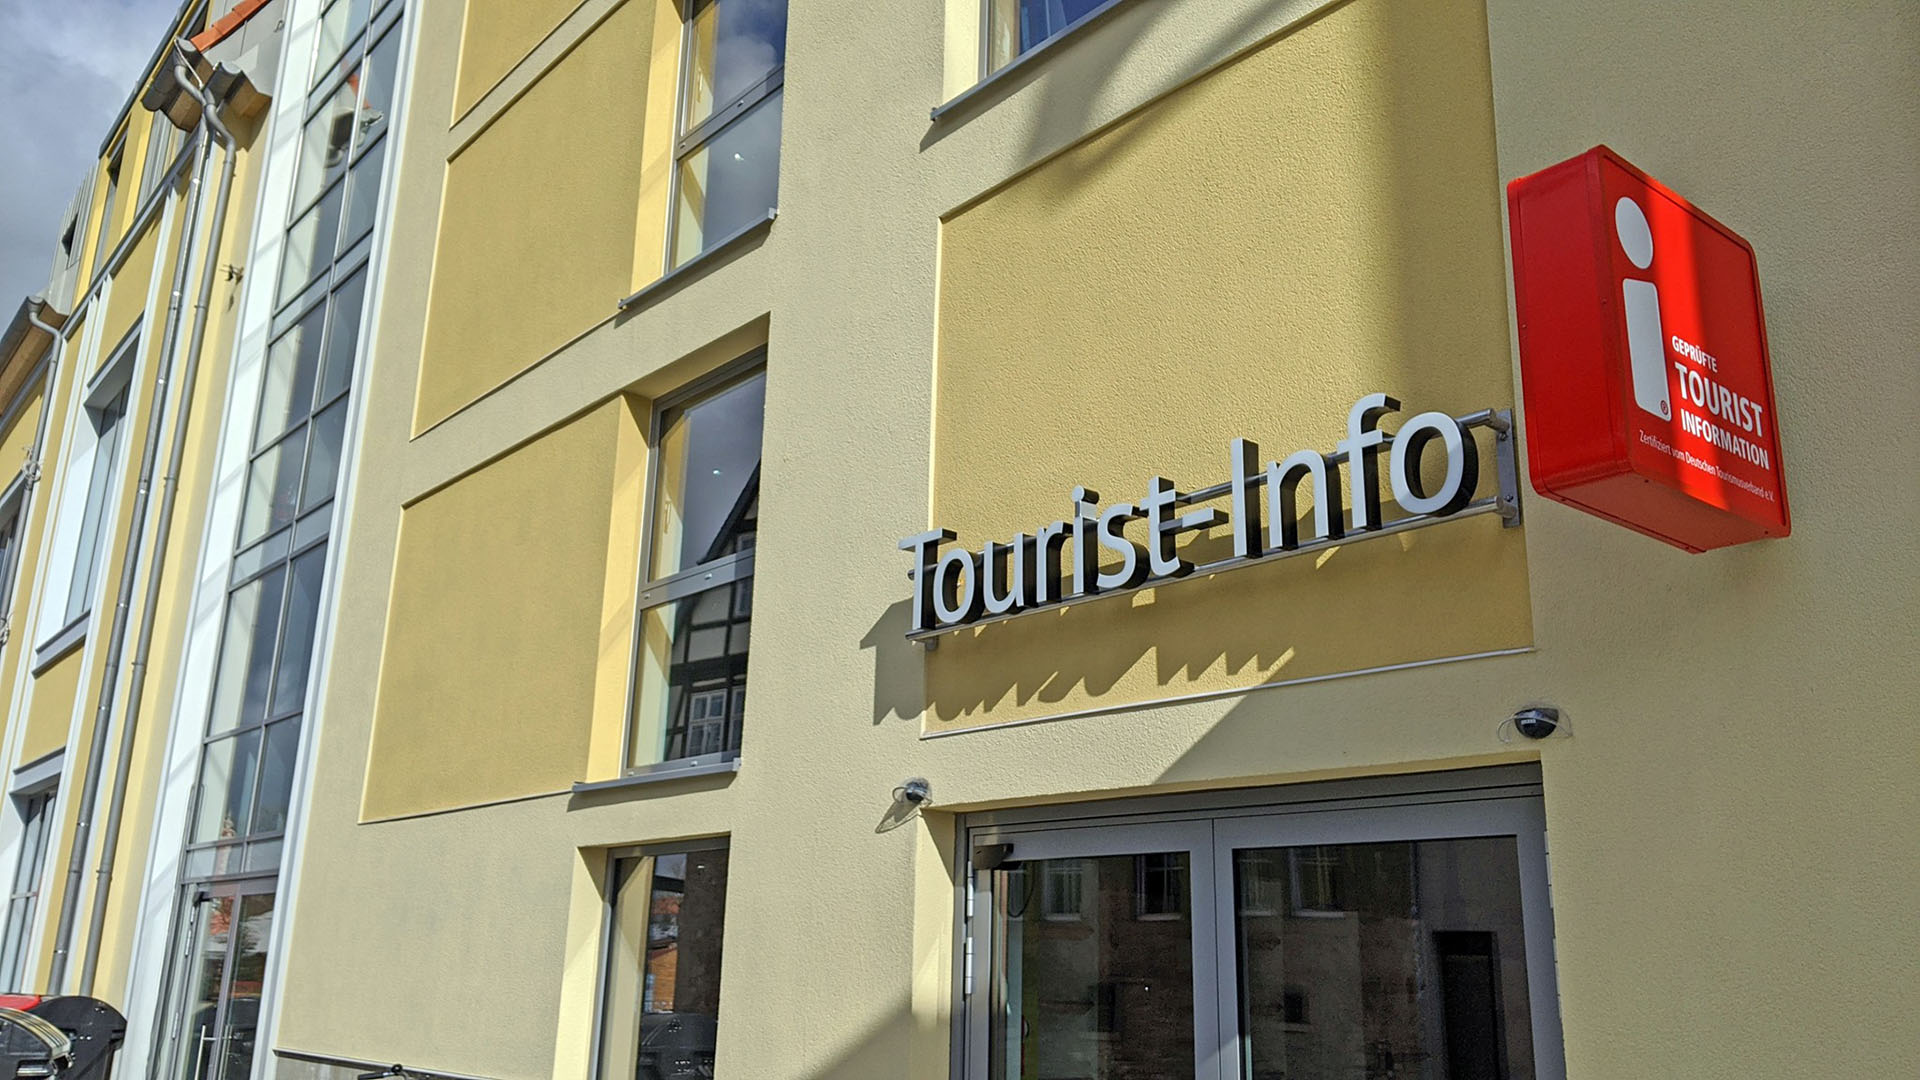 Man sieht eine Hauswand in Gelbtönen, auf der die Leuchtbuchstaben "Tourist-Info" montiert sind. Außerdem hängt daneben eine Leuchtwerbung mit dem offiziellen Zeichen "geprüfte Tourist Information" des Deutschen Tourismusverbandes e.V.